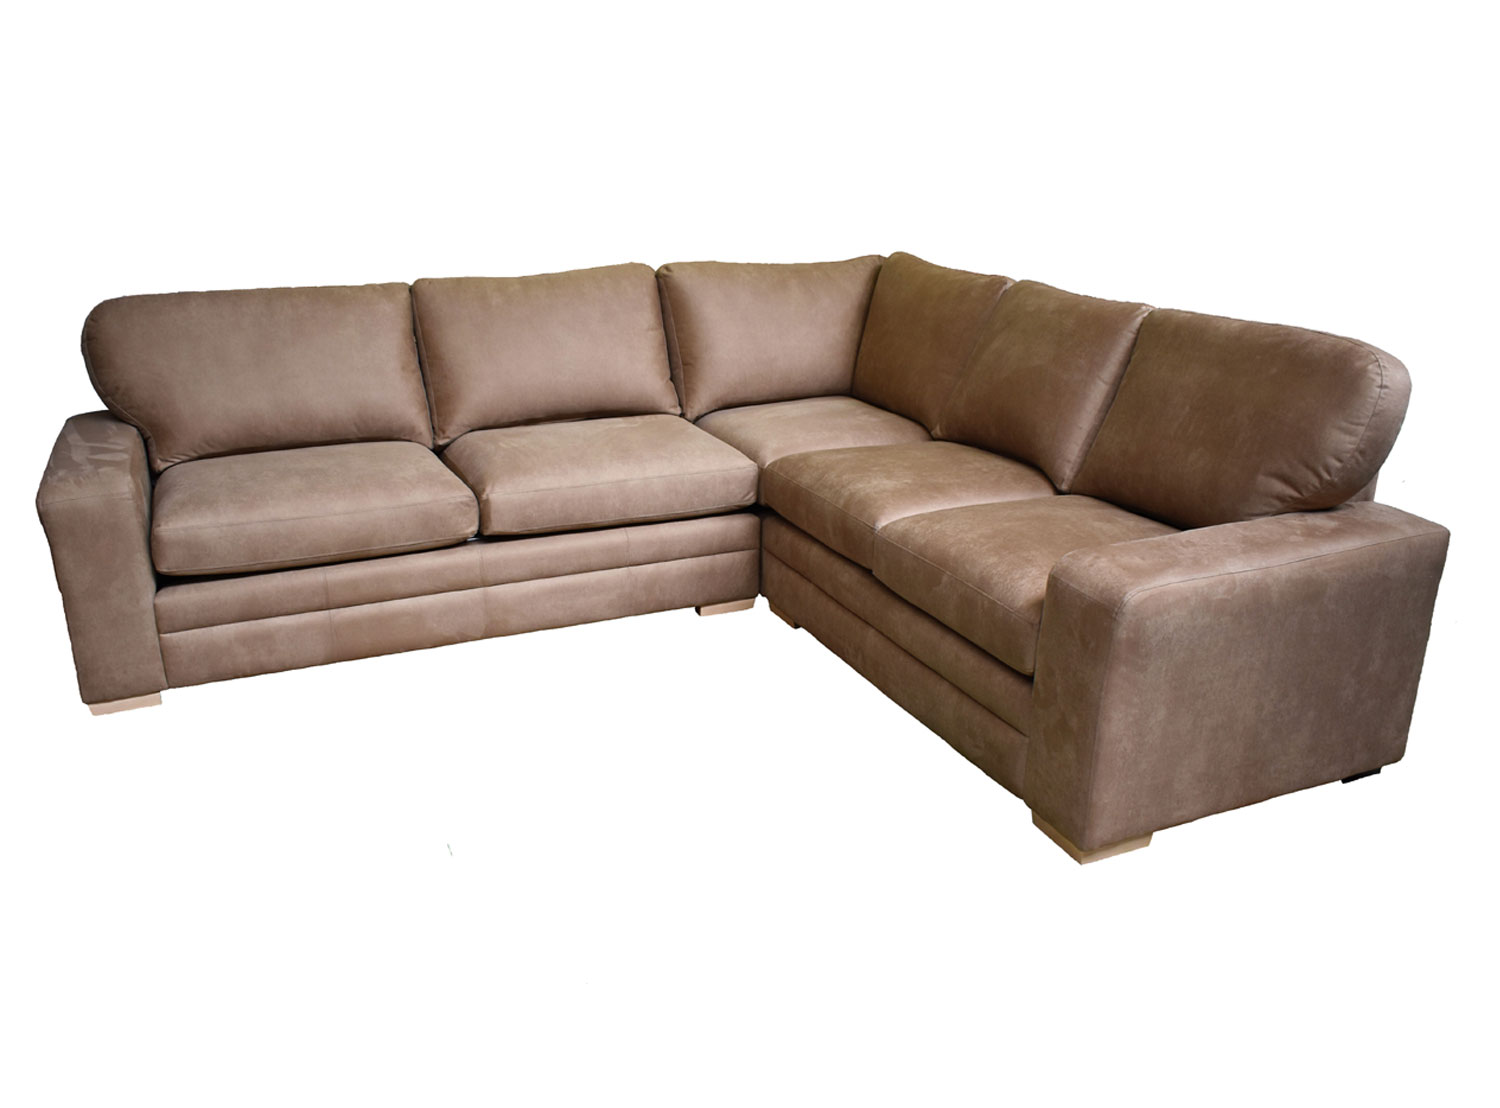 milan corner sofa bed groupon